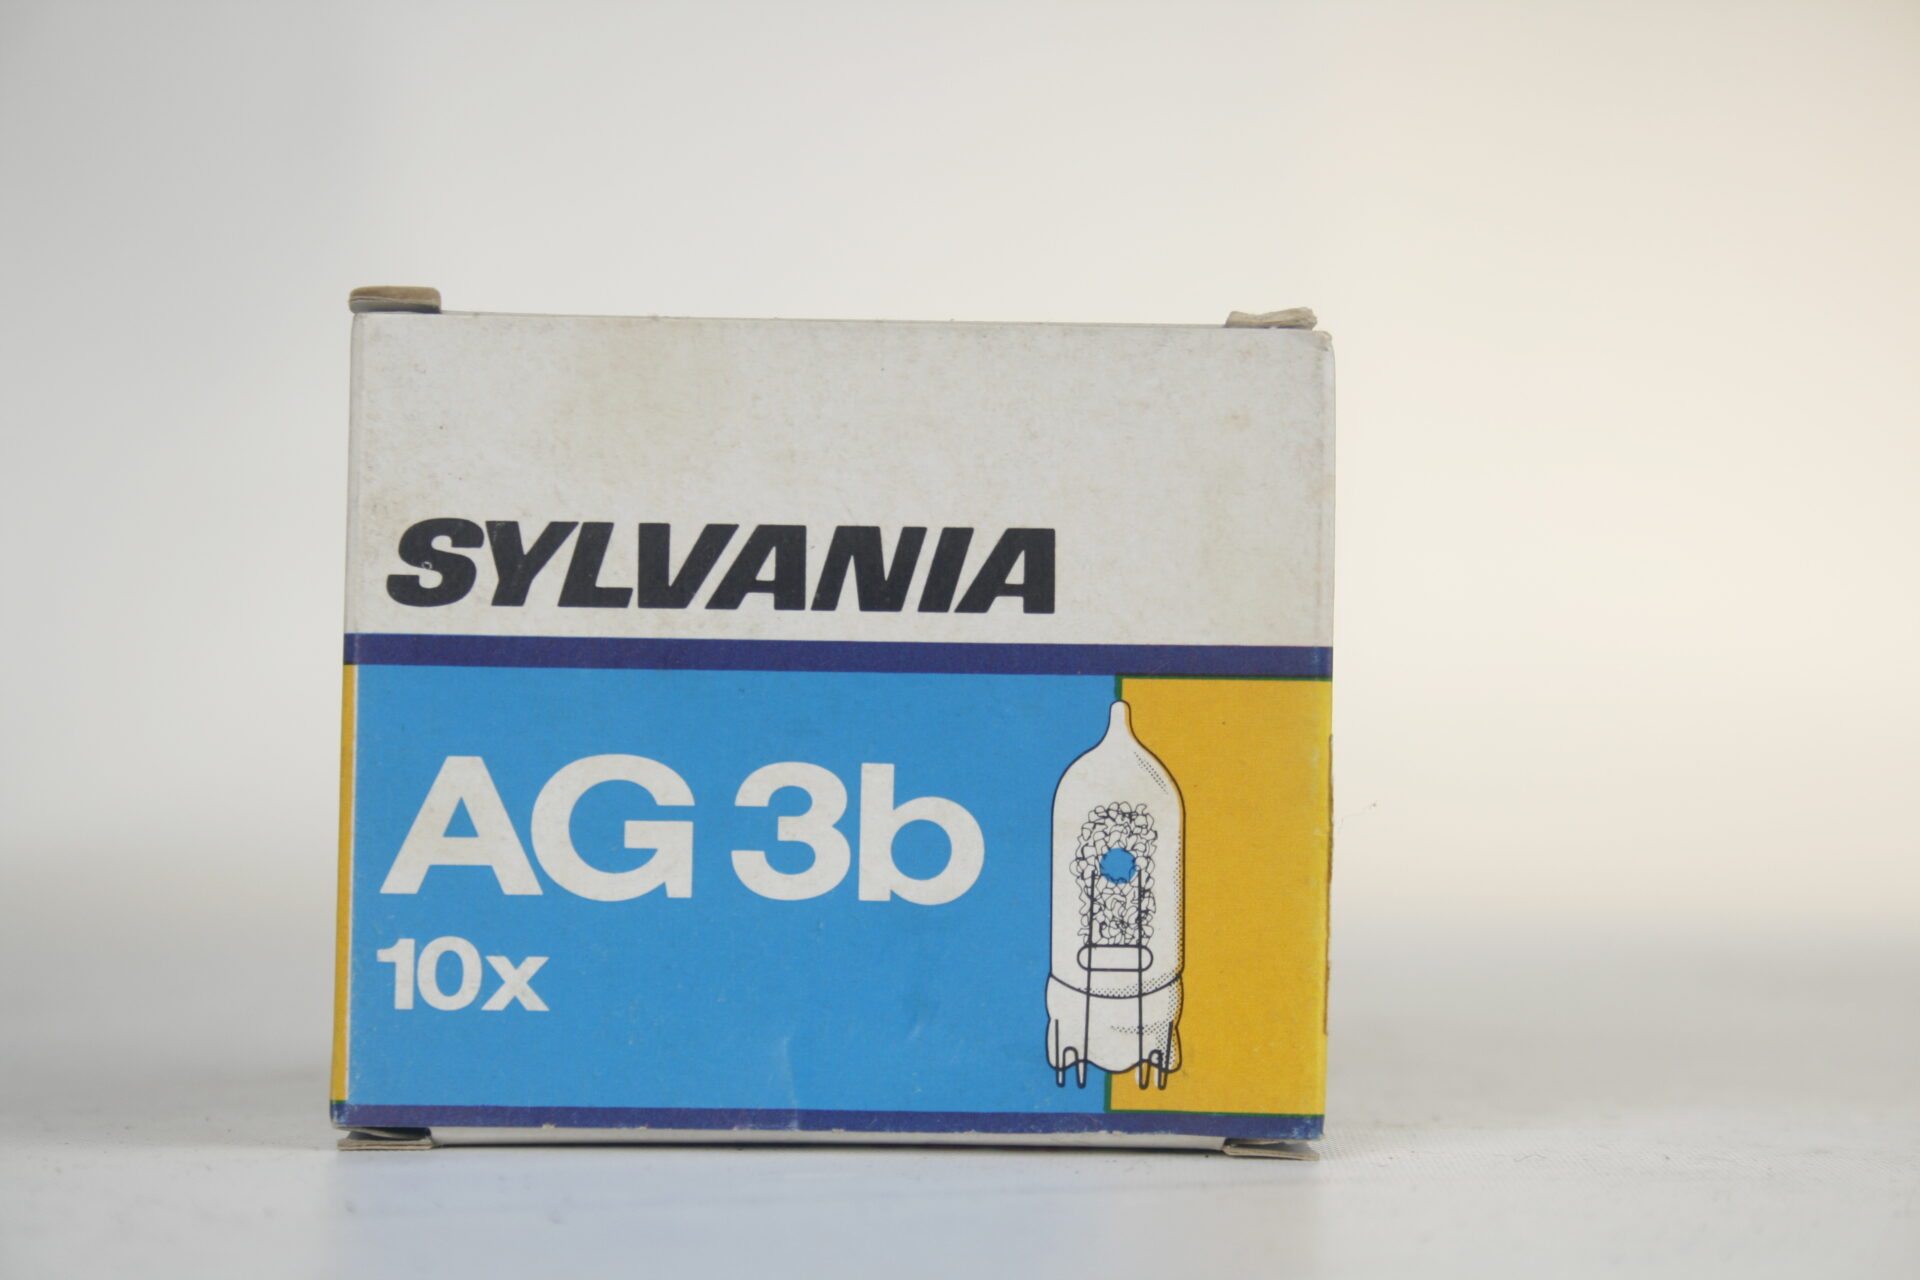 Sylvania AG3b 10x flitslampjes